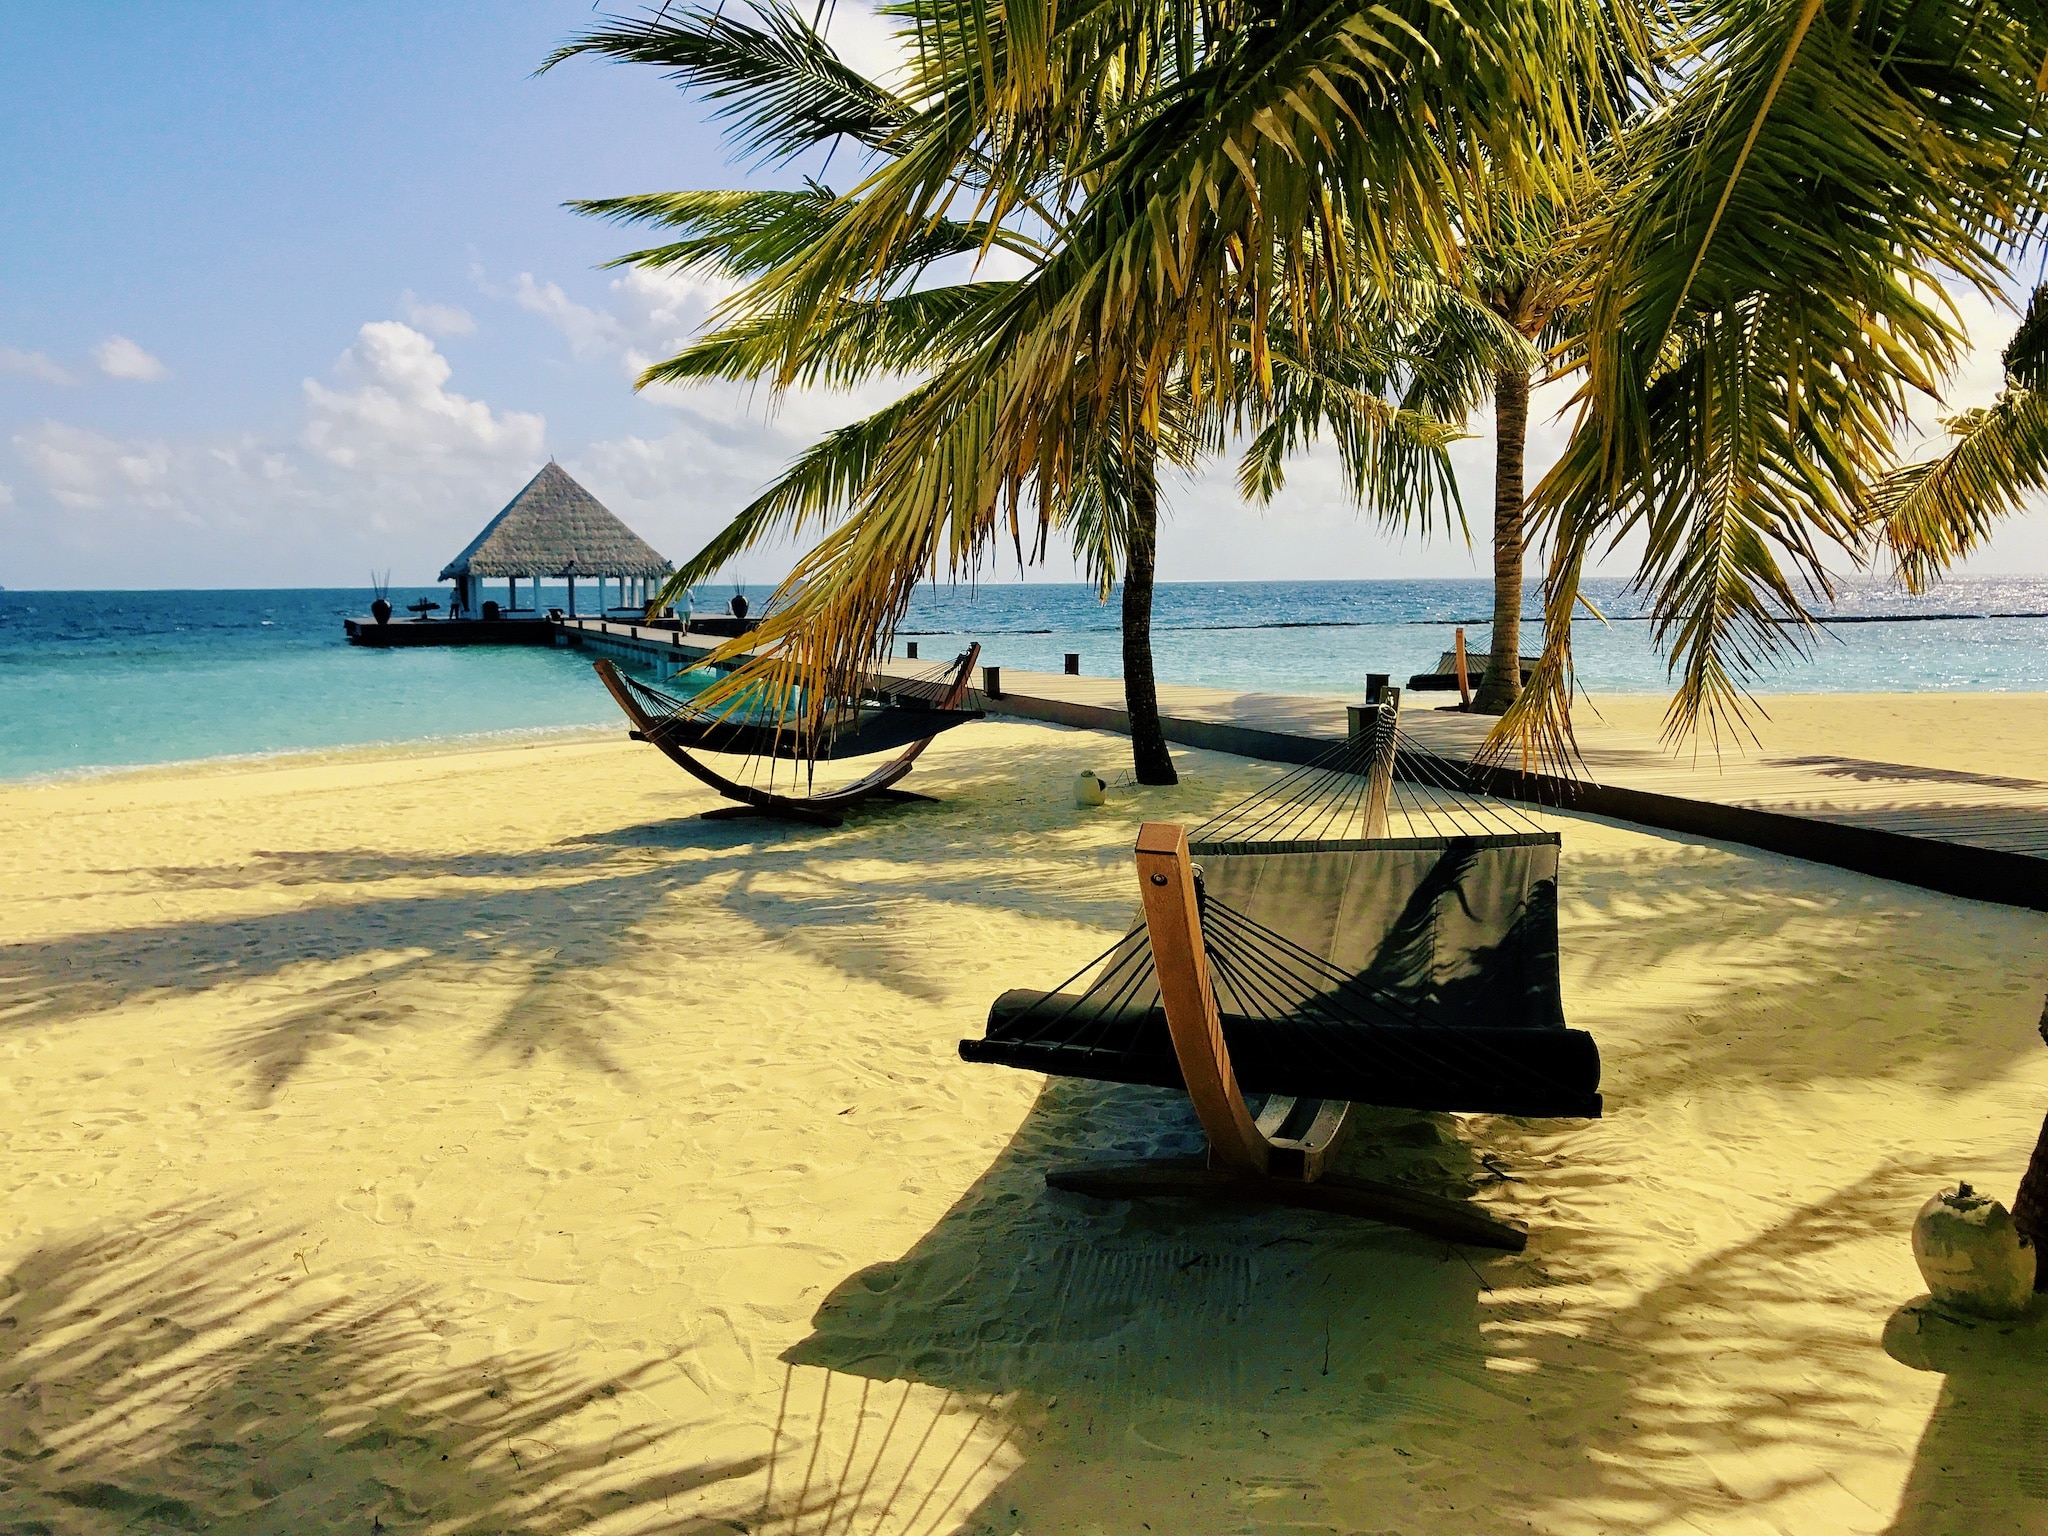 Reserve férias baratas nas Maldivas – dicas e experiências para a ilha paradisíaca